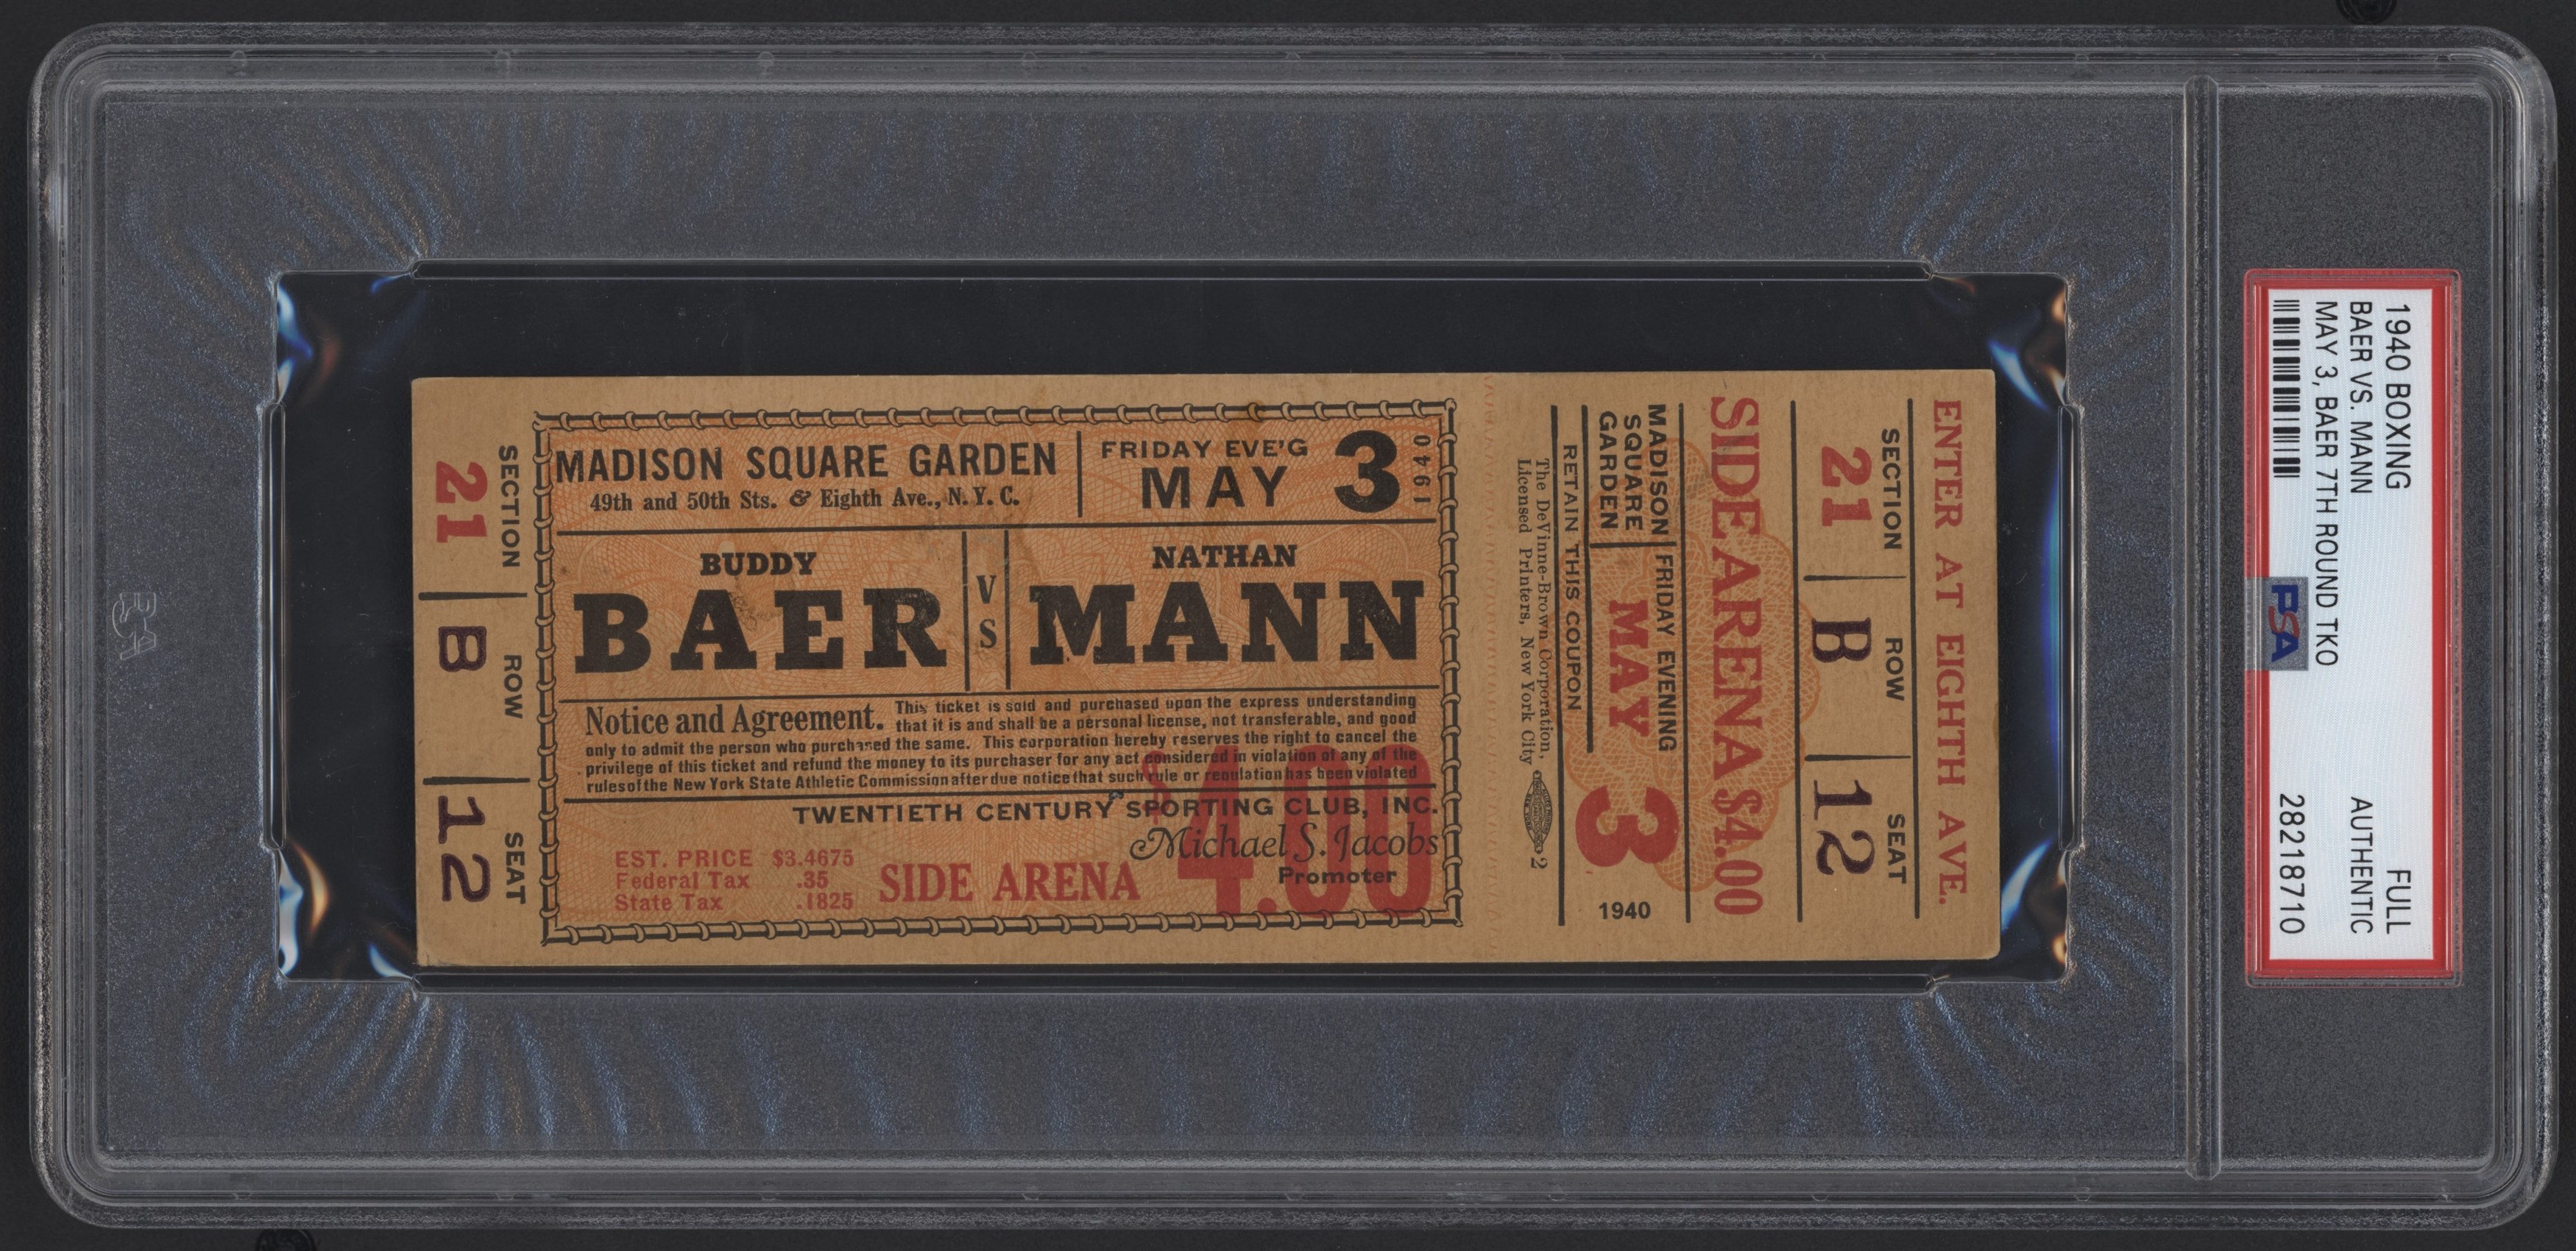 - 1940 Buddy Baer vs. Nathan Mann Full Ticket